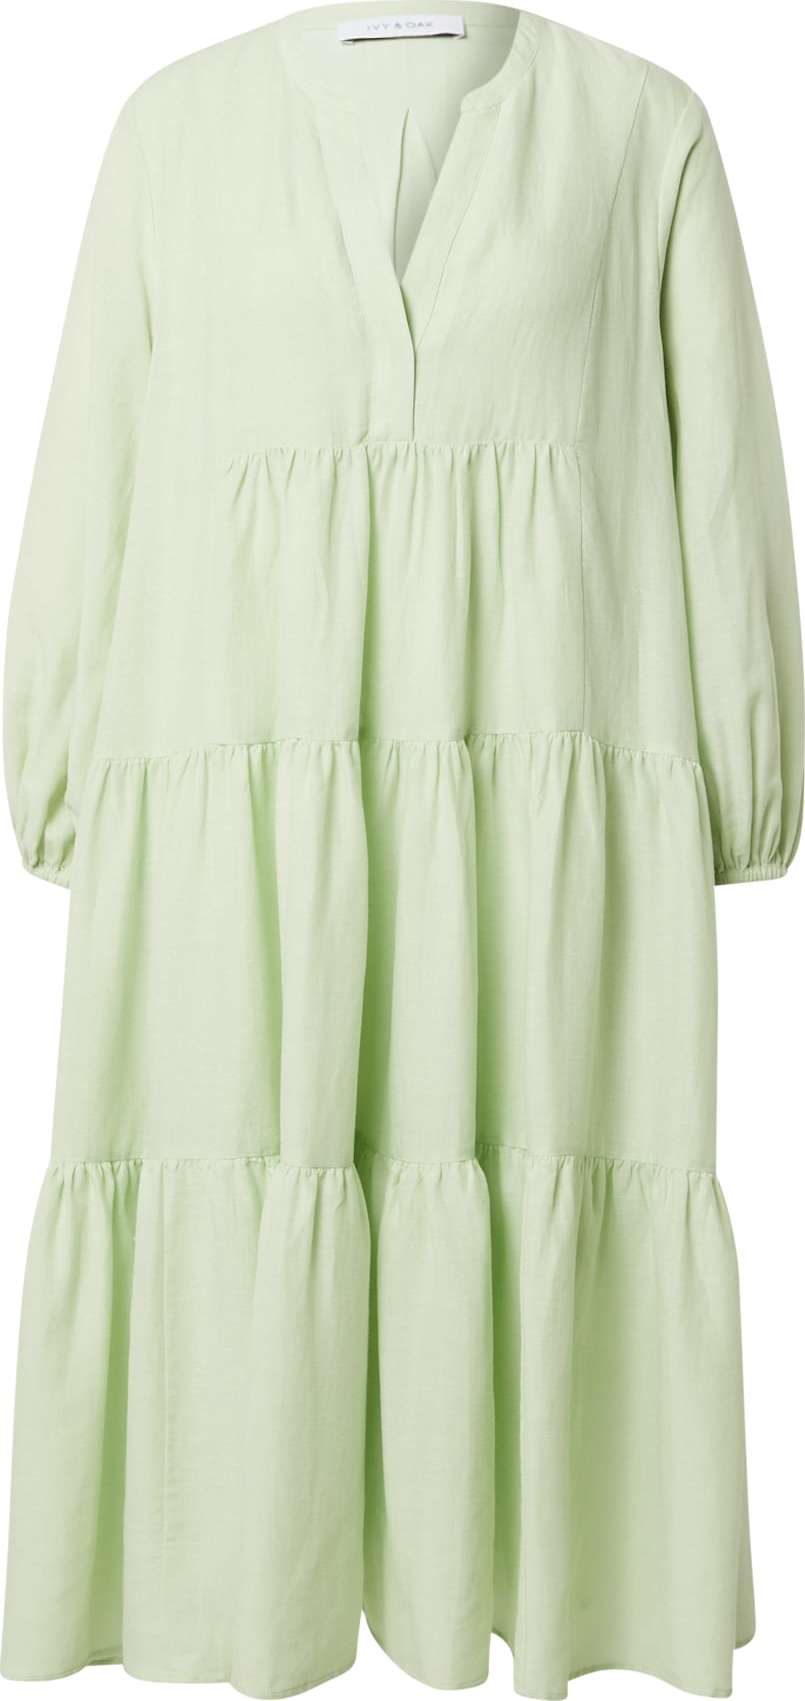 IVY OAK Košilové šaty 'DOROTHY' pastelově zelená